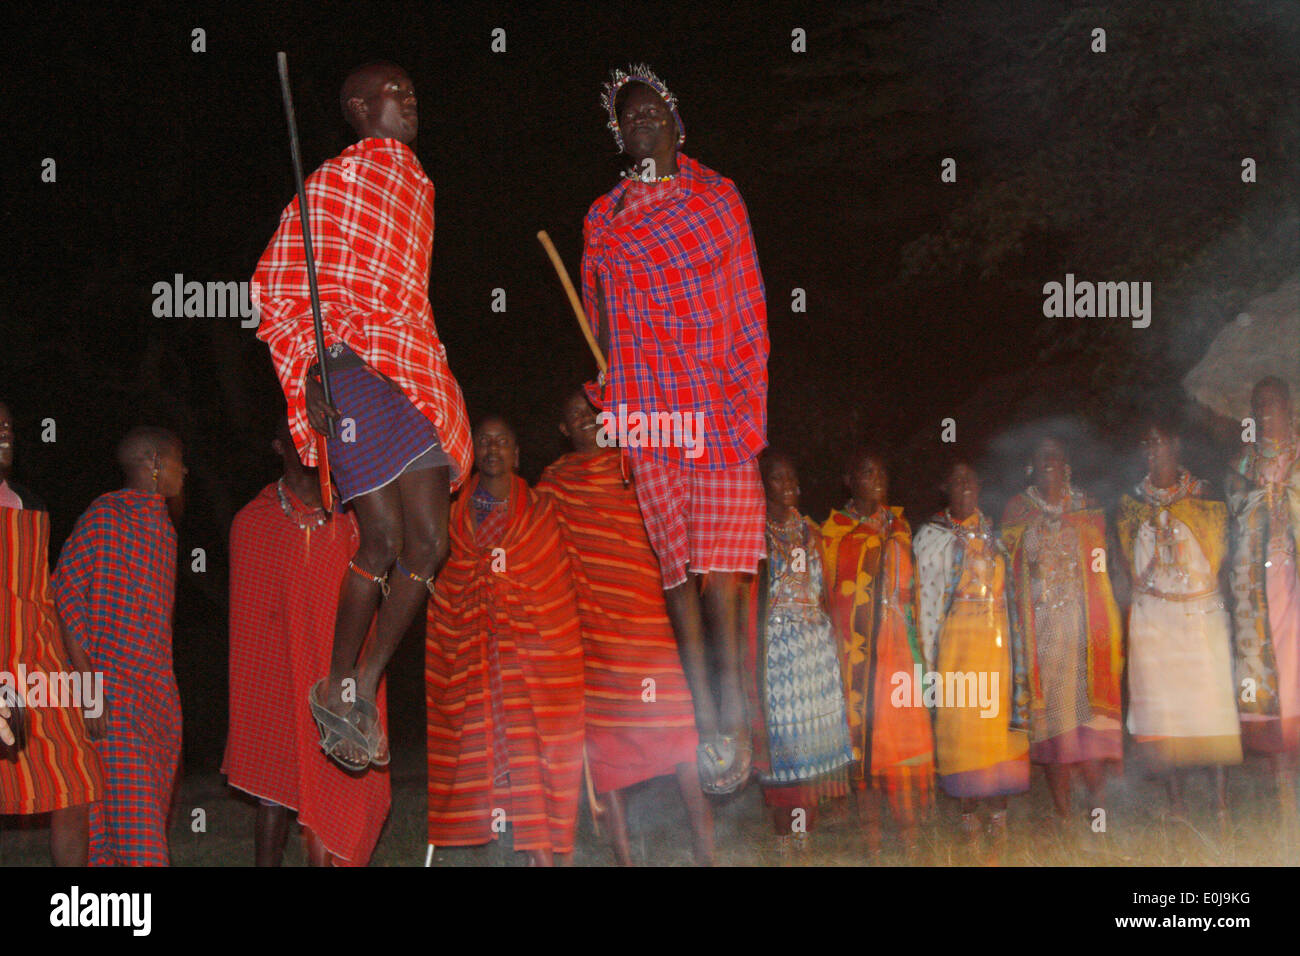 Masai youth dancing, Masai Mara, Kenya Stock Photo